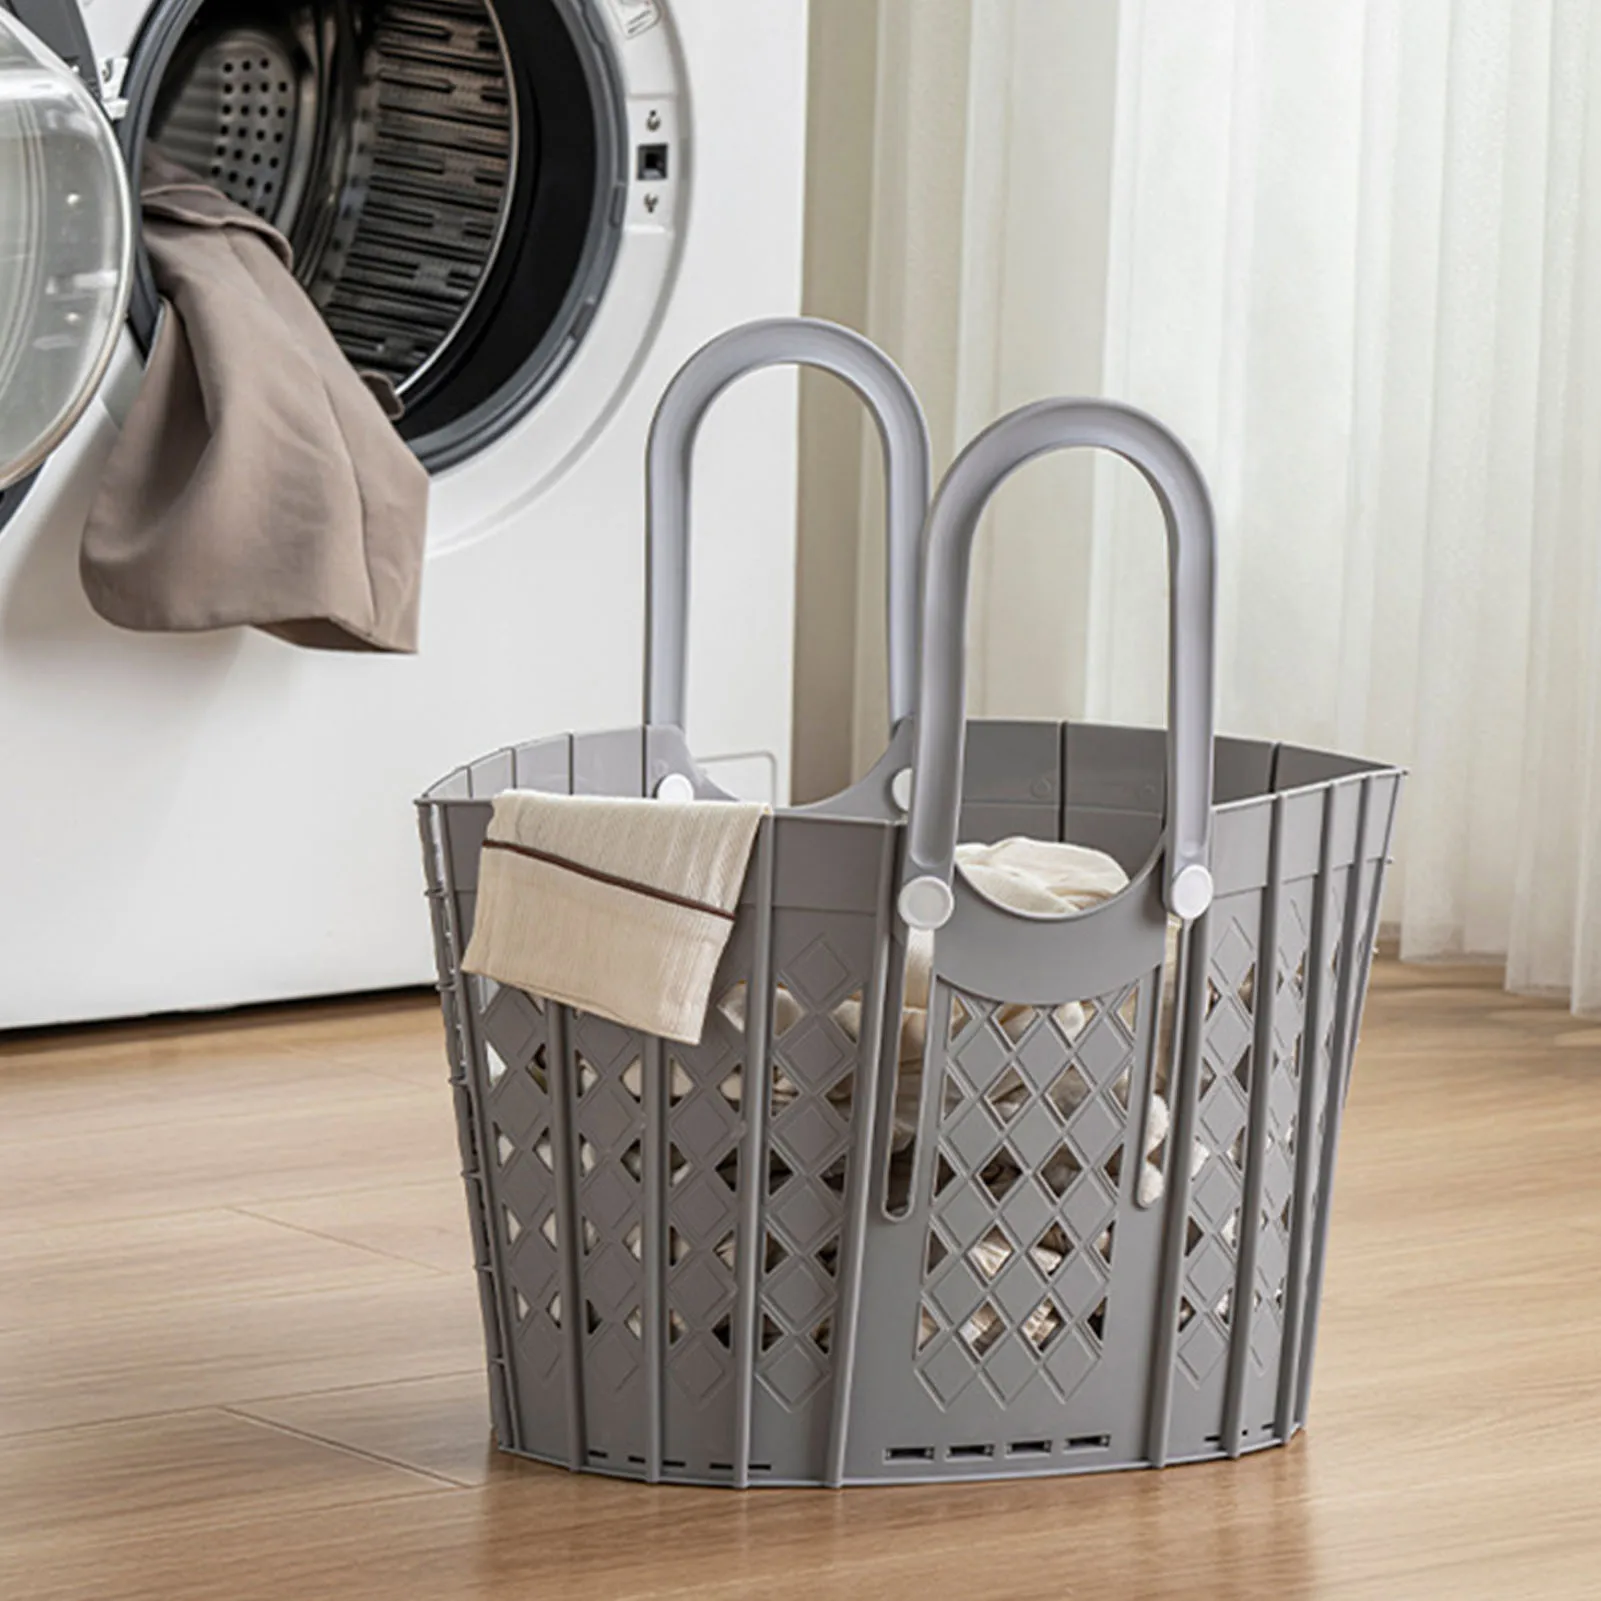 Сгъваема кошница за дрехи в банята Здрав органайзер за съхраняване на мръсно бельо запазване на място за общежитието на колежа или у дома